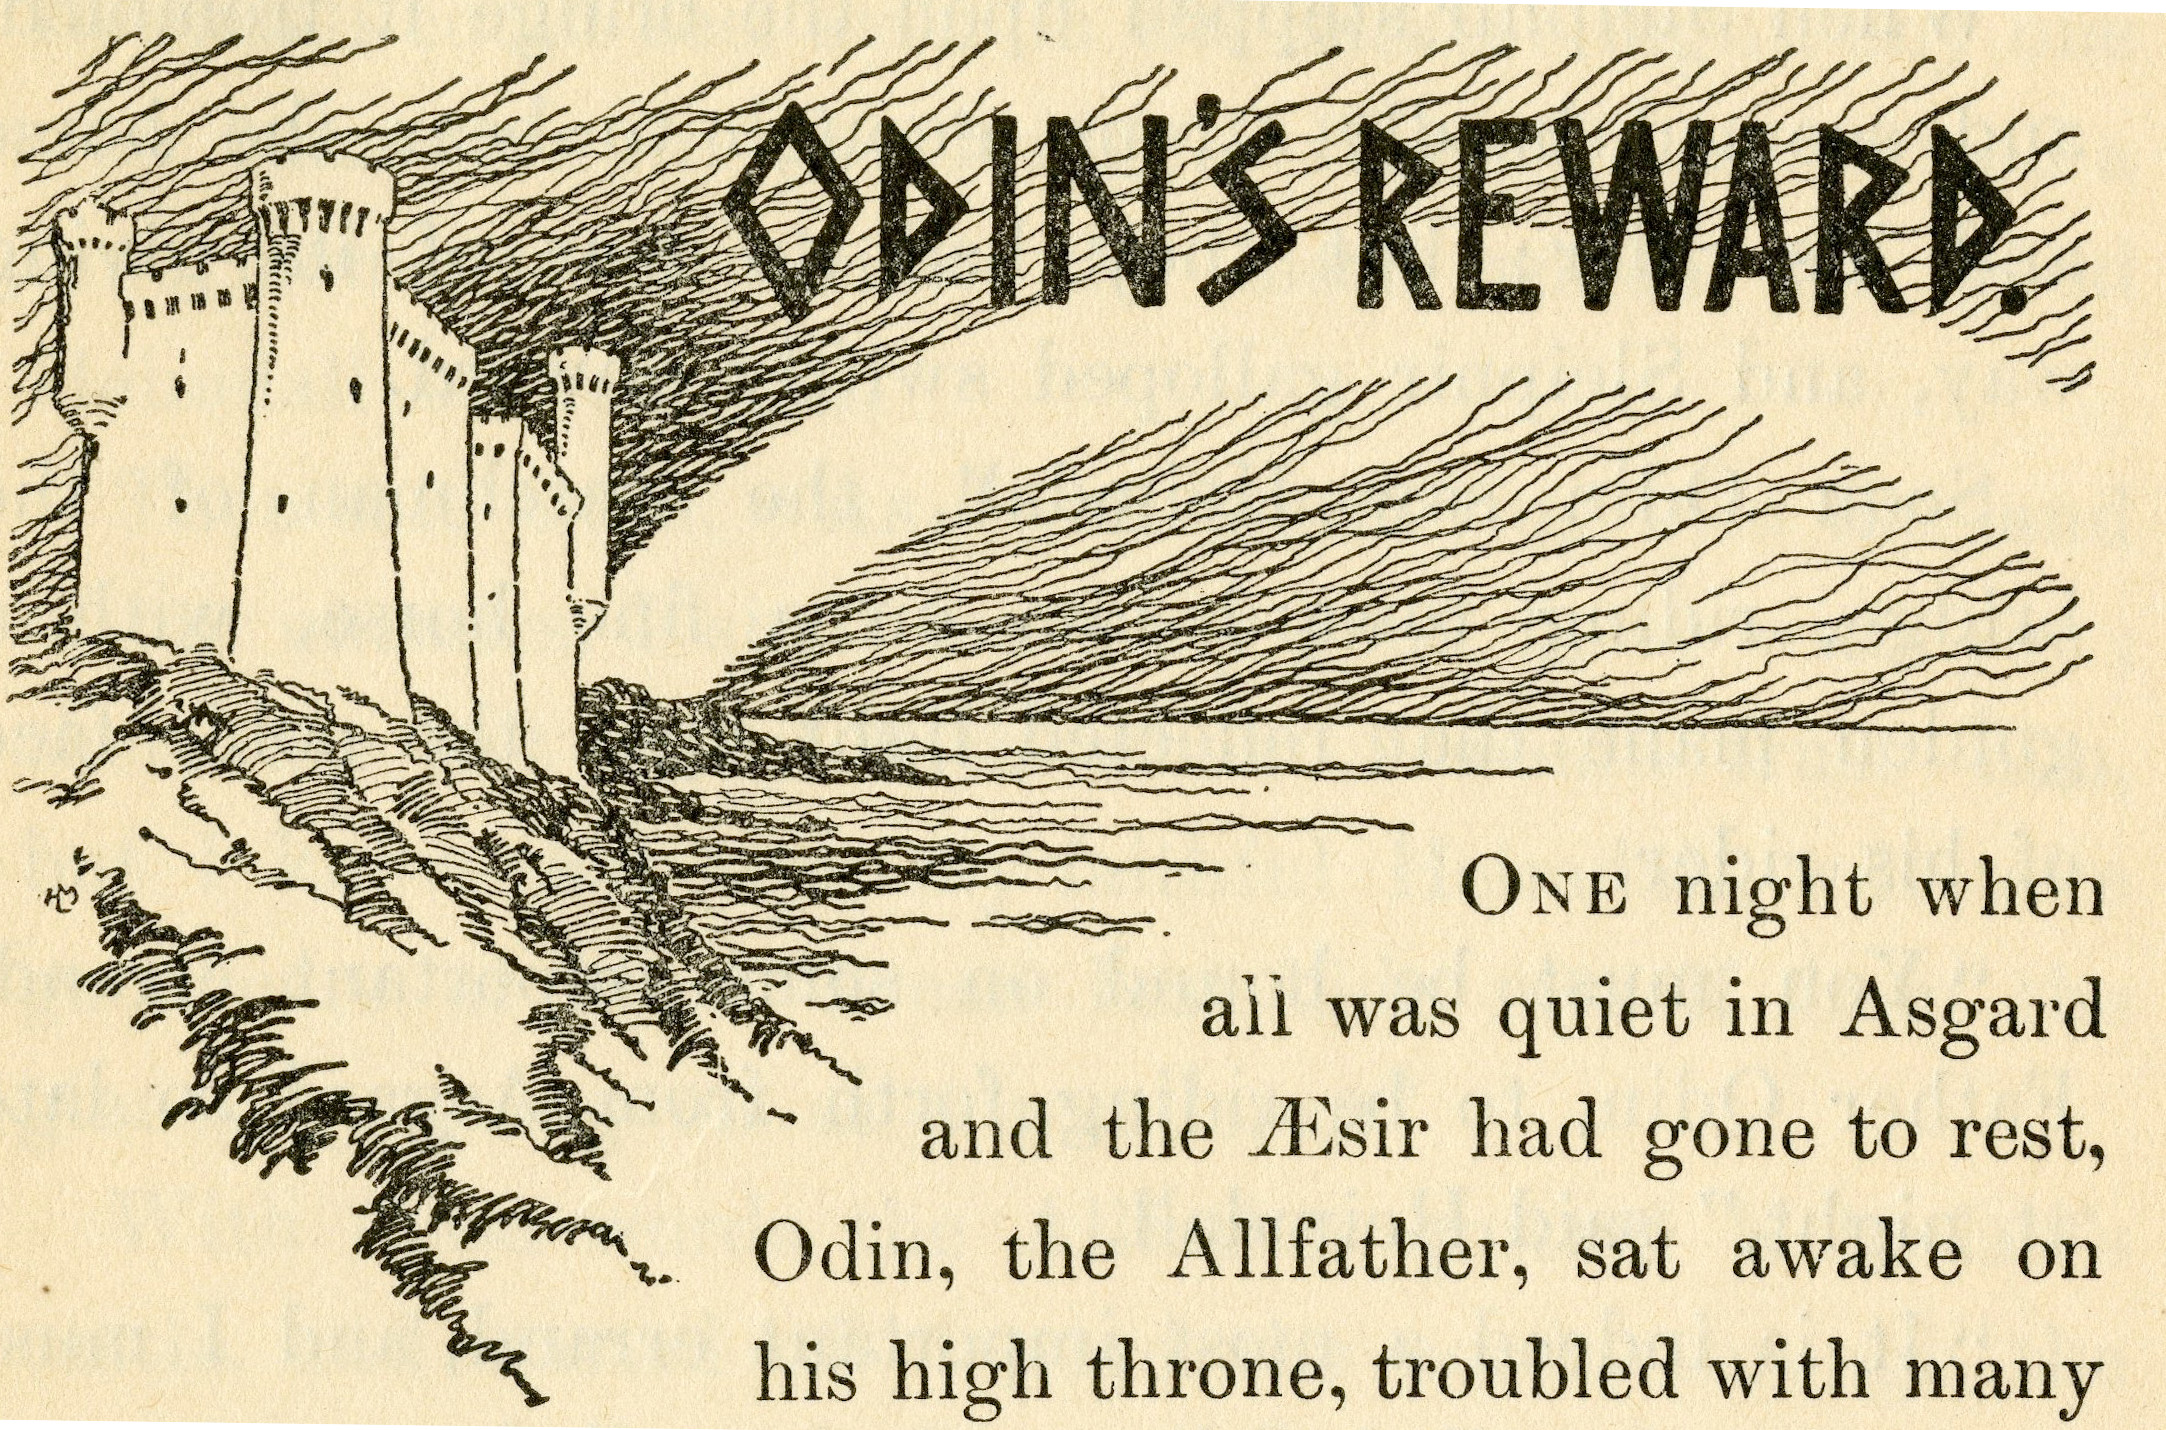 Illustrated Title Header for "Odin's
                                Reward"